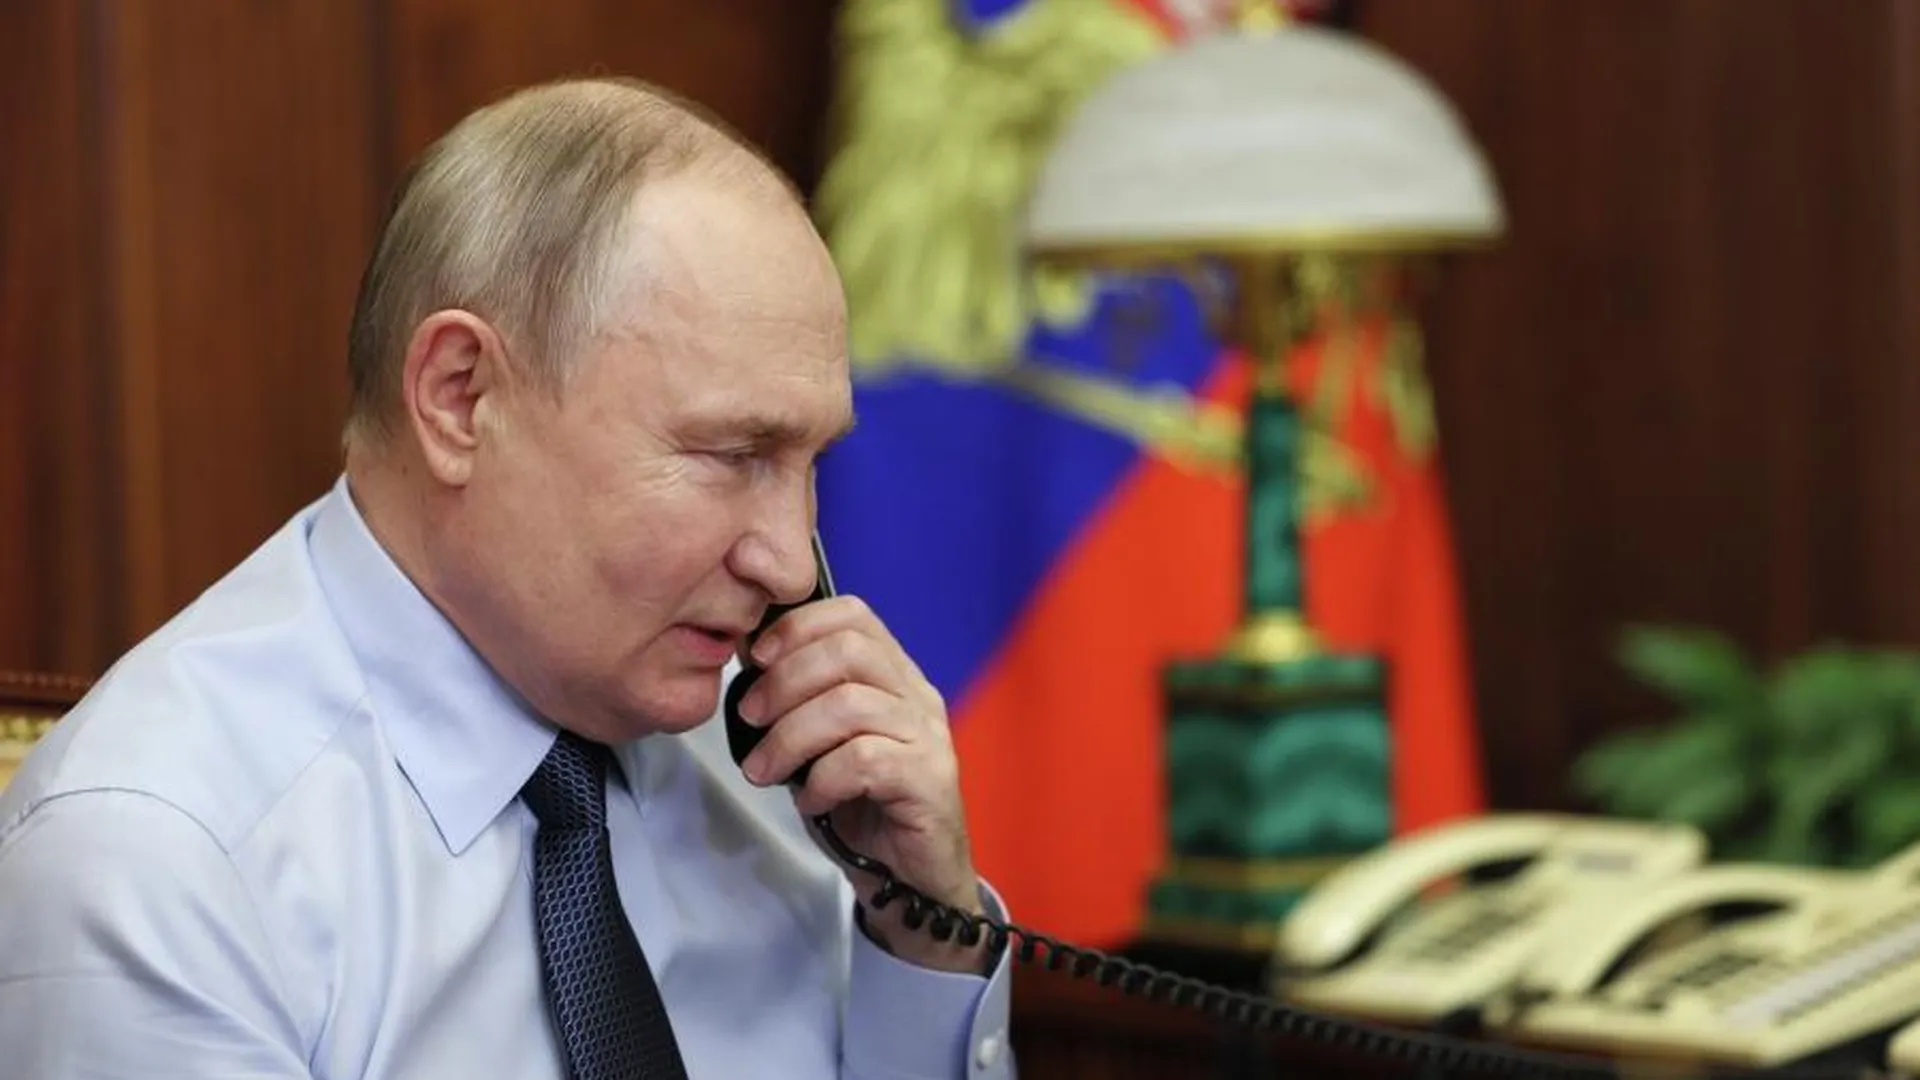 Песков: Путин позвонит губернатору Чибису, на которого совершено покушение